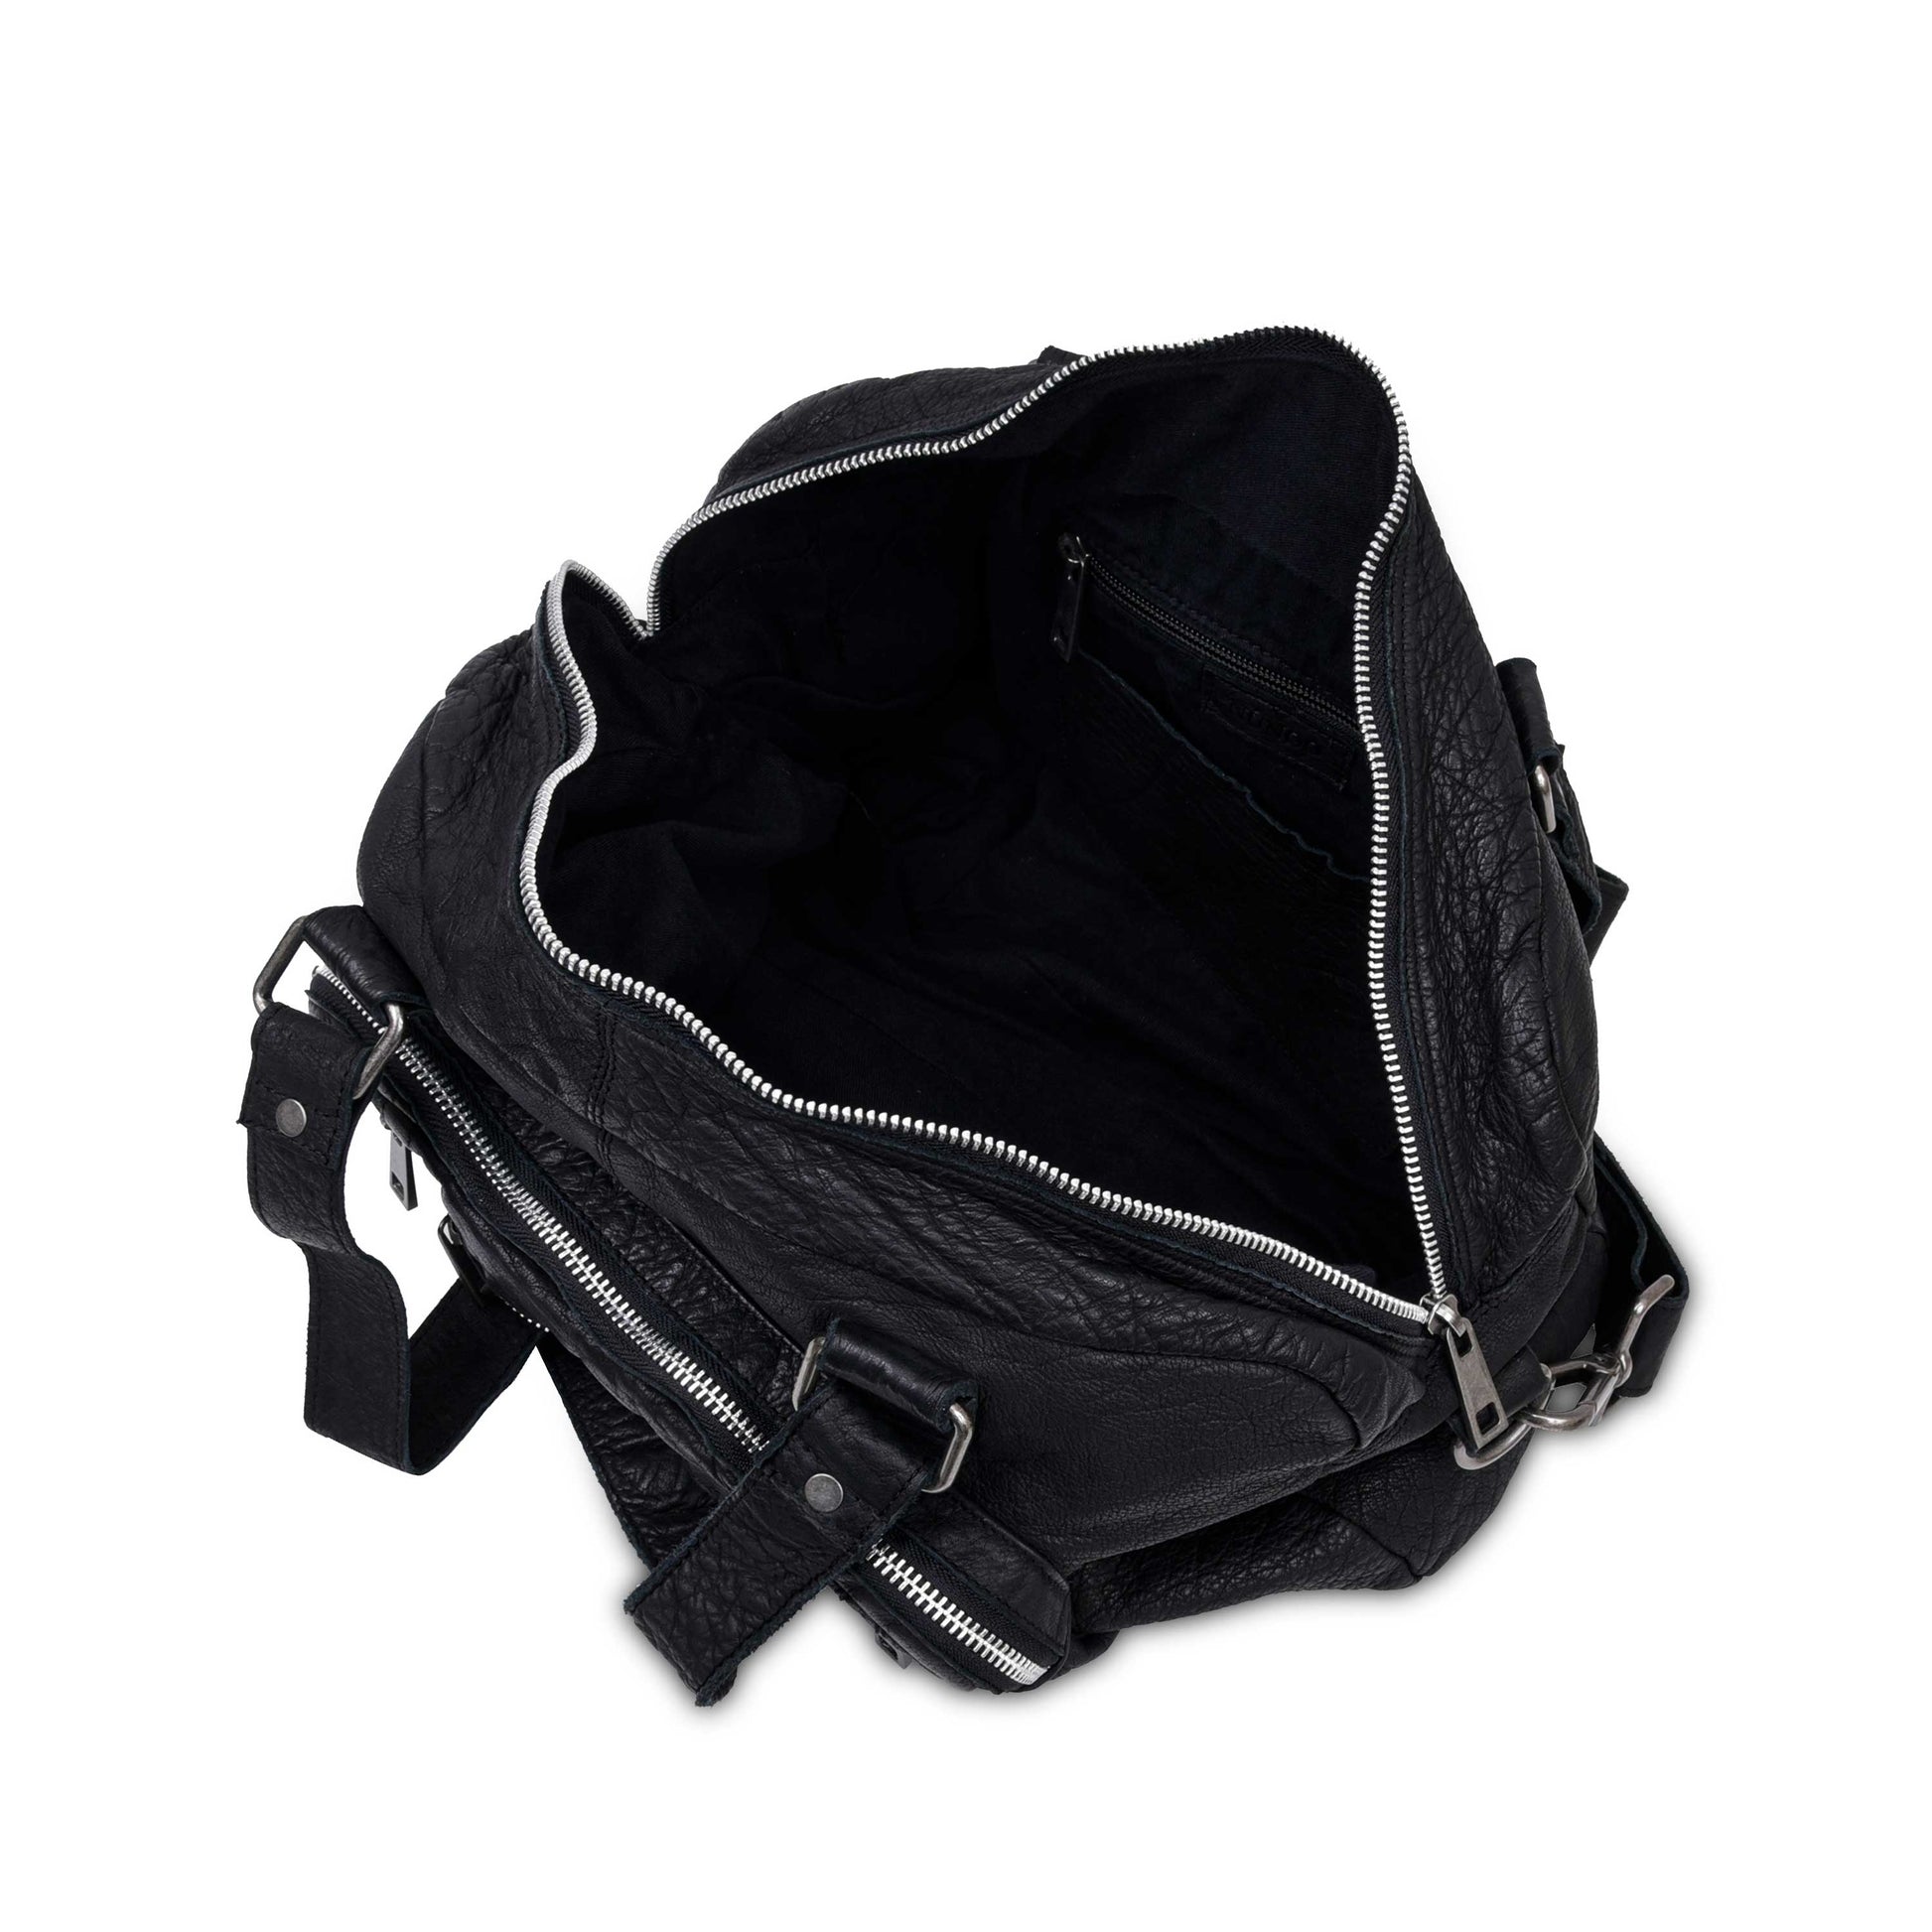 Núnoo Mille washed black Shoulder bags Black